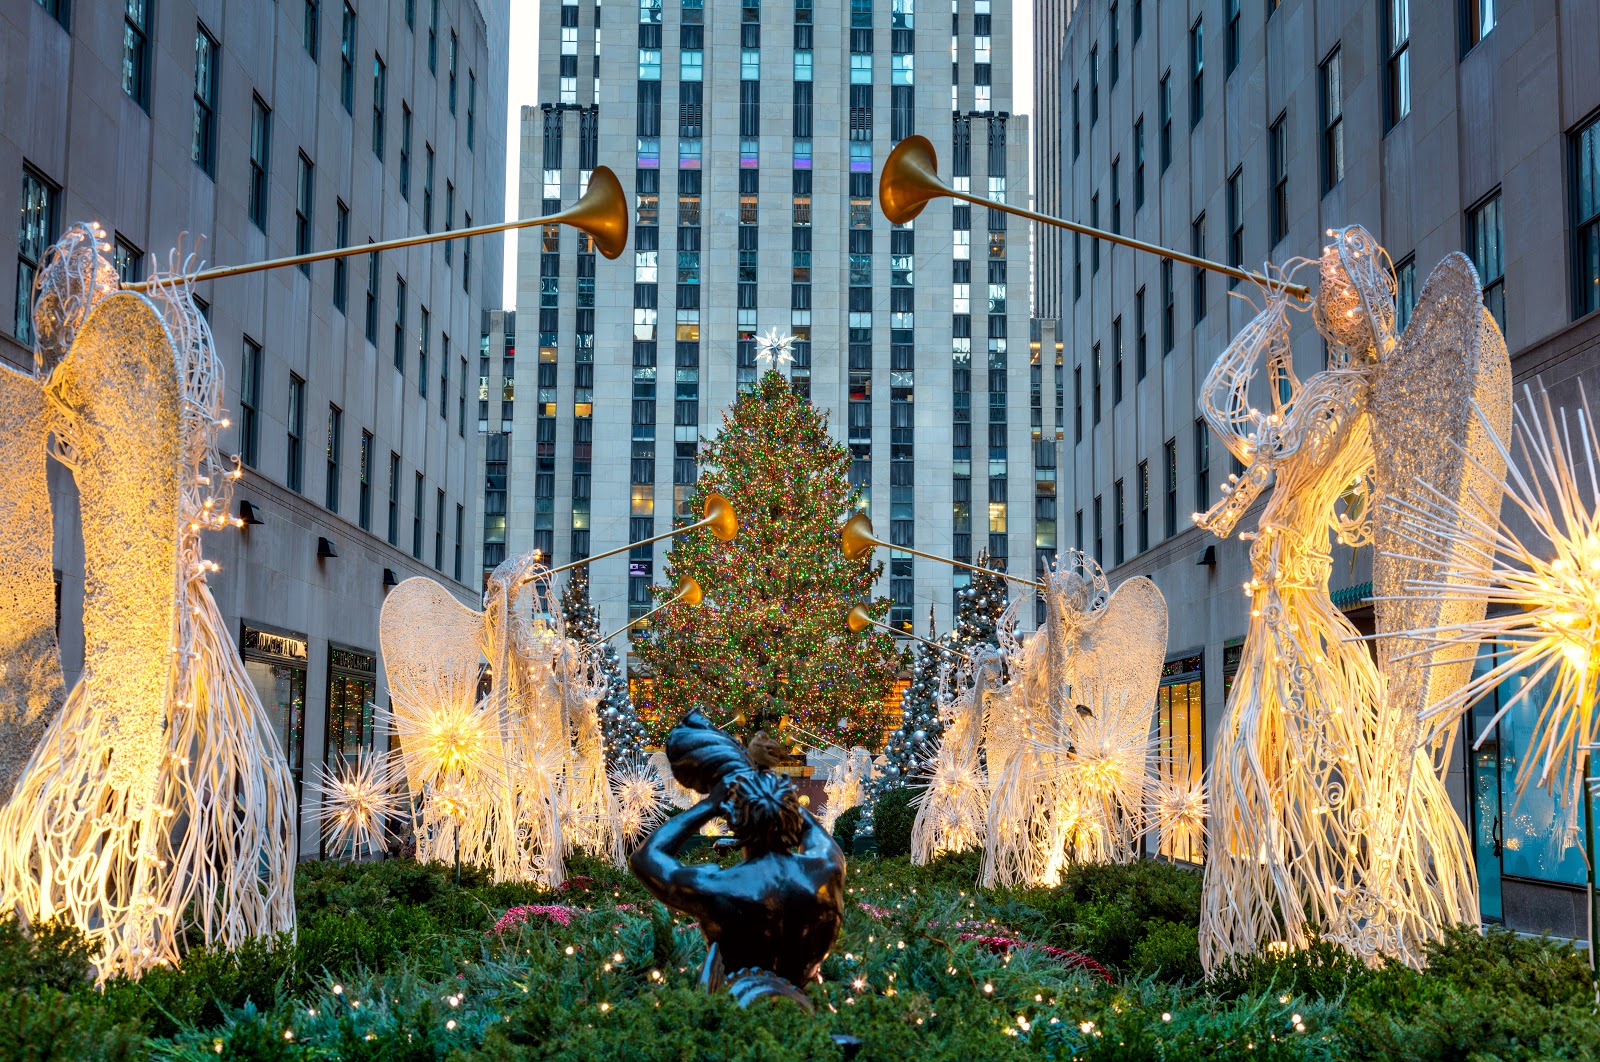 Rockfeller Center's iconic Christmas Tree